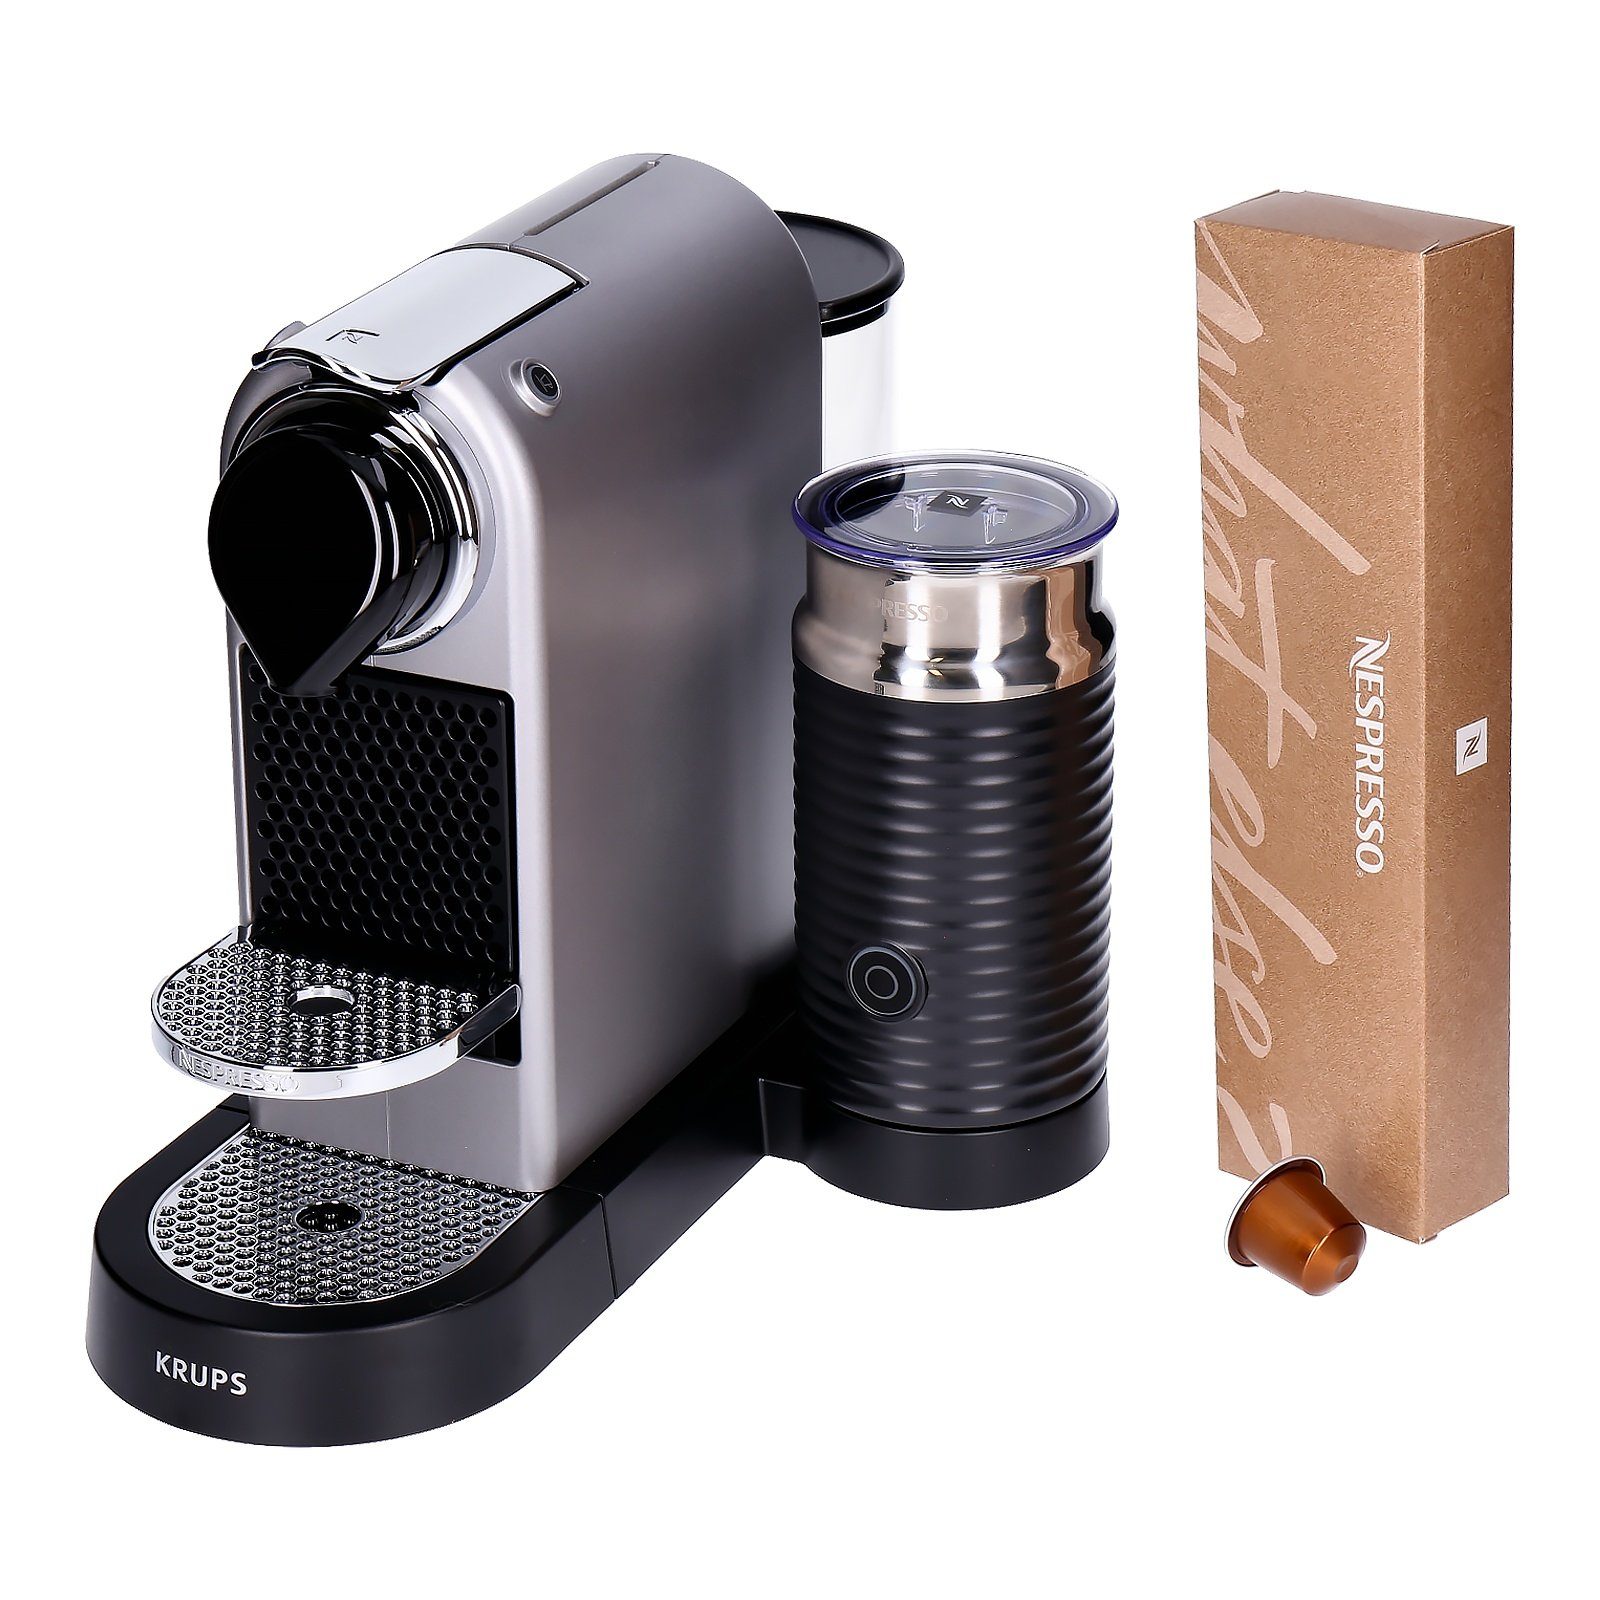 Nespresso Kapselmaschine XN761B Nespresso Citiz&Milk Kaffeekapsel maschine mit integriertem Milchaufschäumer